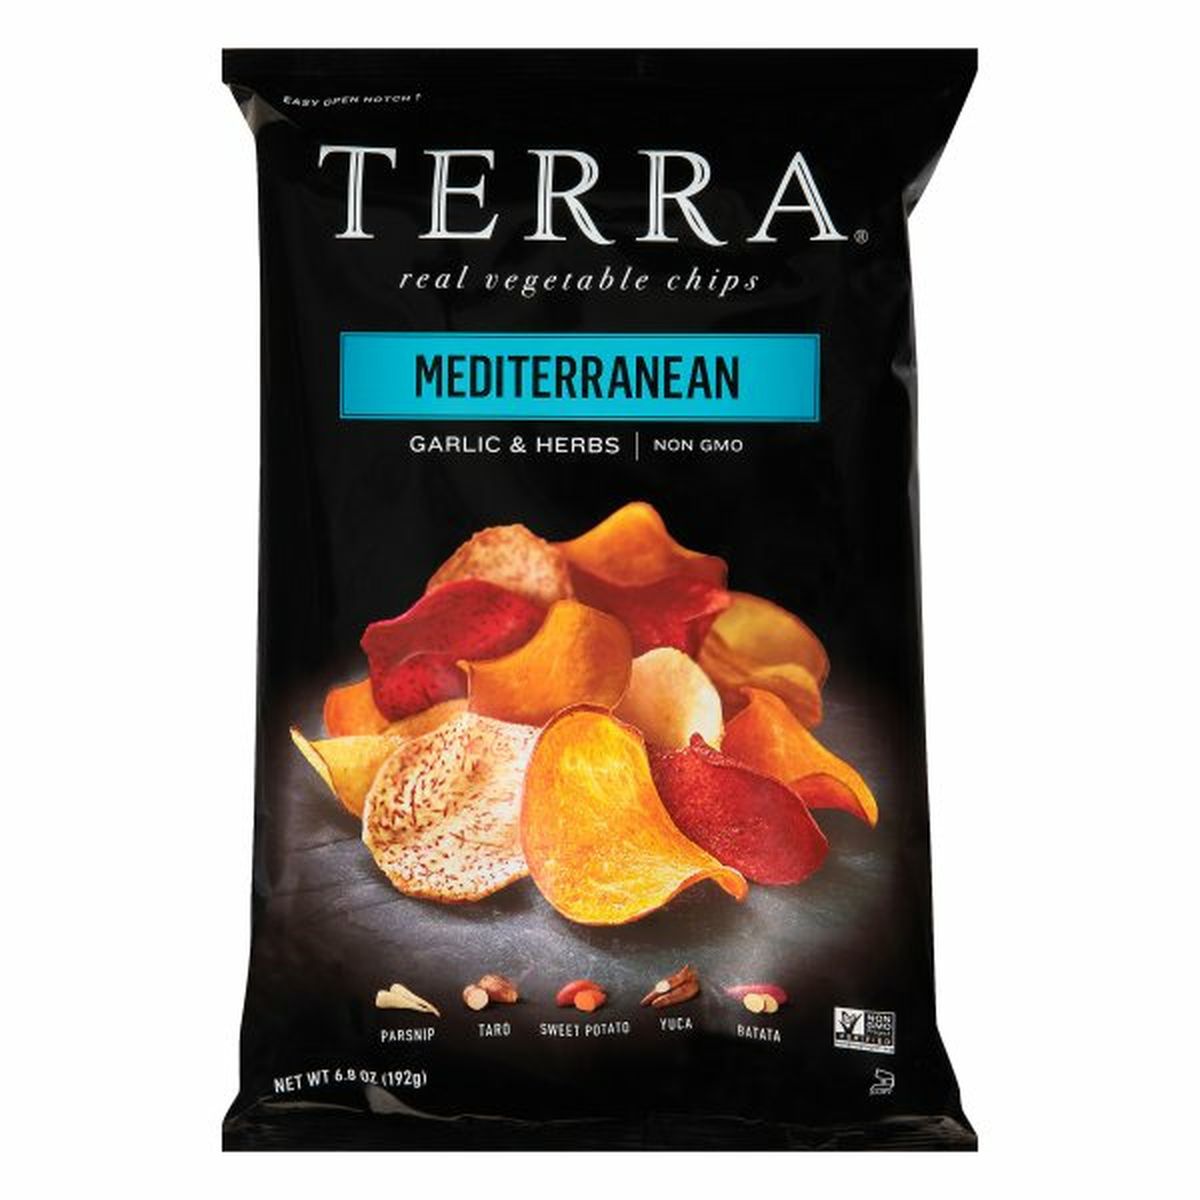 Calories in TERRA Vegetable Chips, Mediterranean, Garlic & Herbs